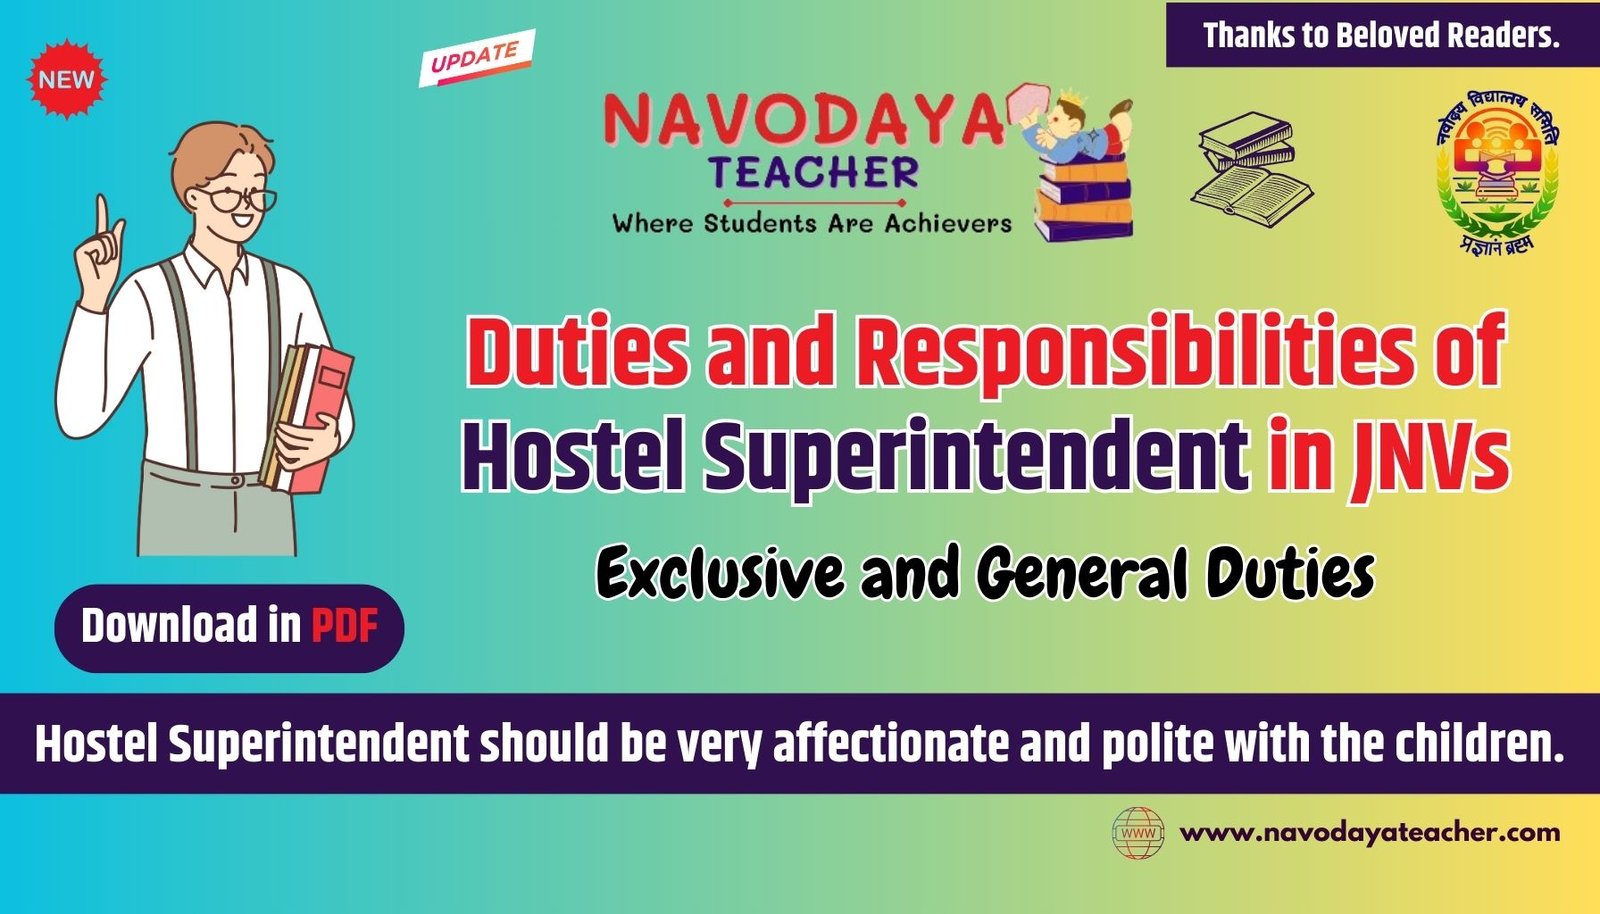 Duties and Responsibilities of Hostel Superintendent in Navodaya JNVs